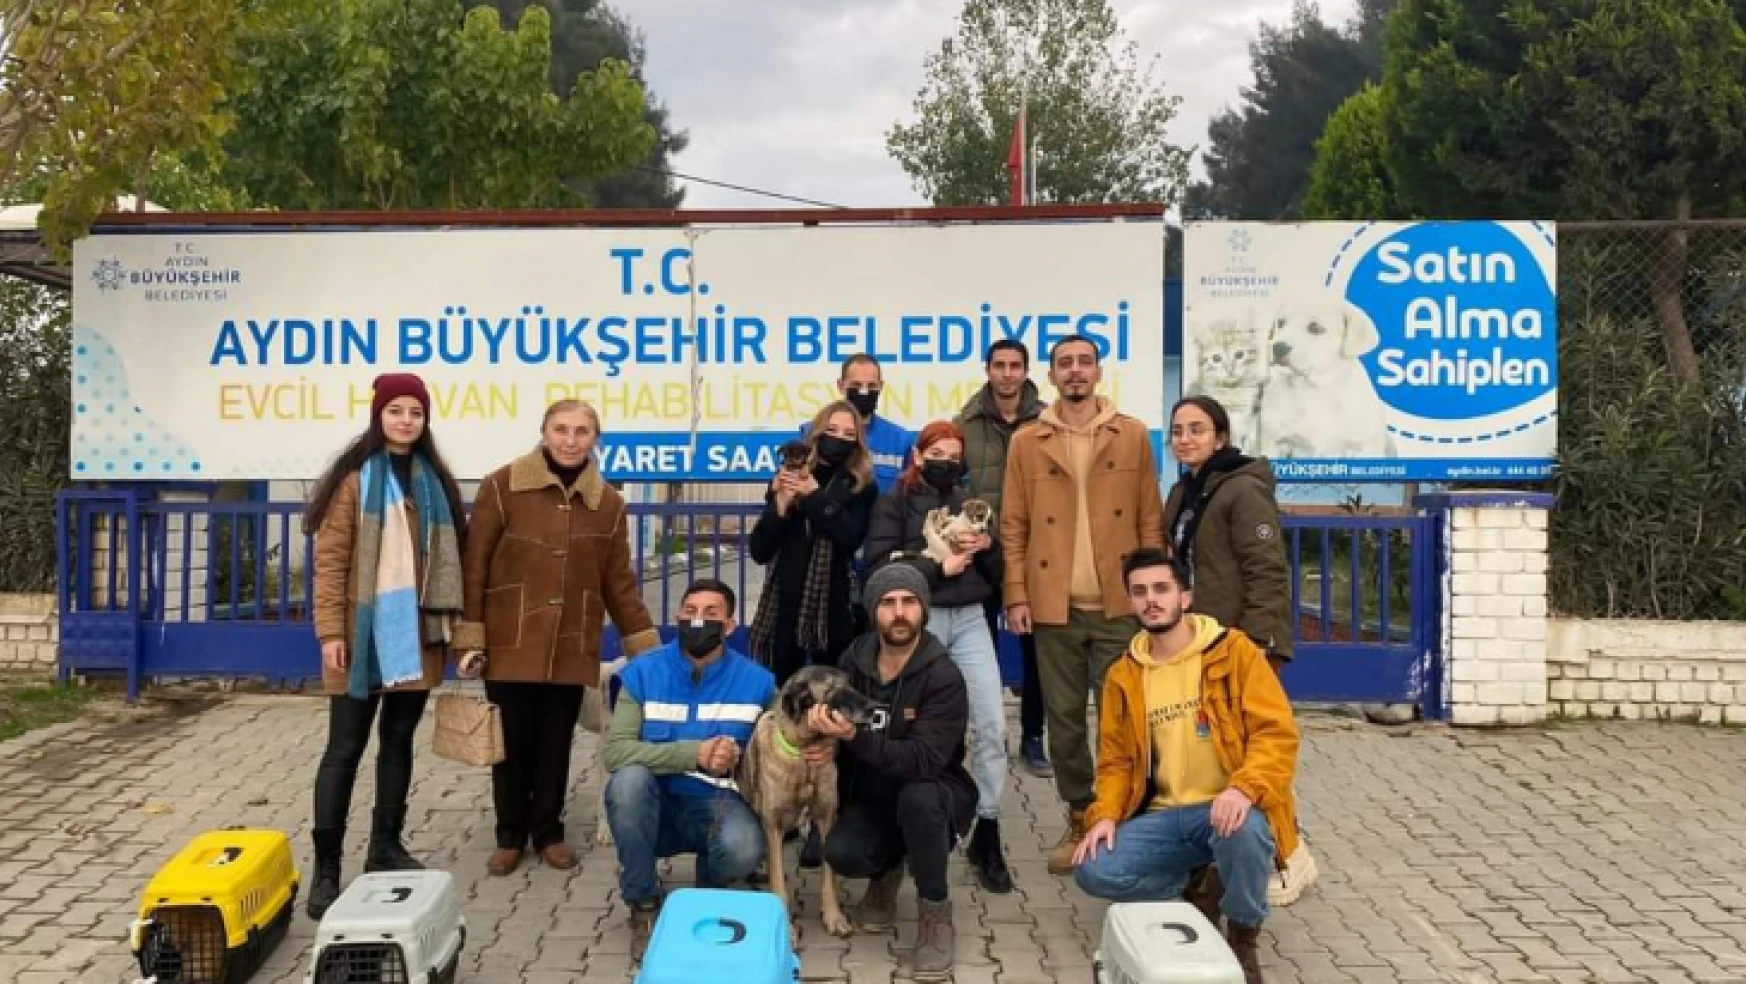 Nazillili hayvanseverler, Aydın'daki çalışmalardan memnun